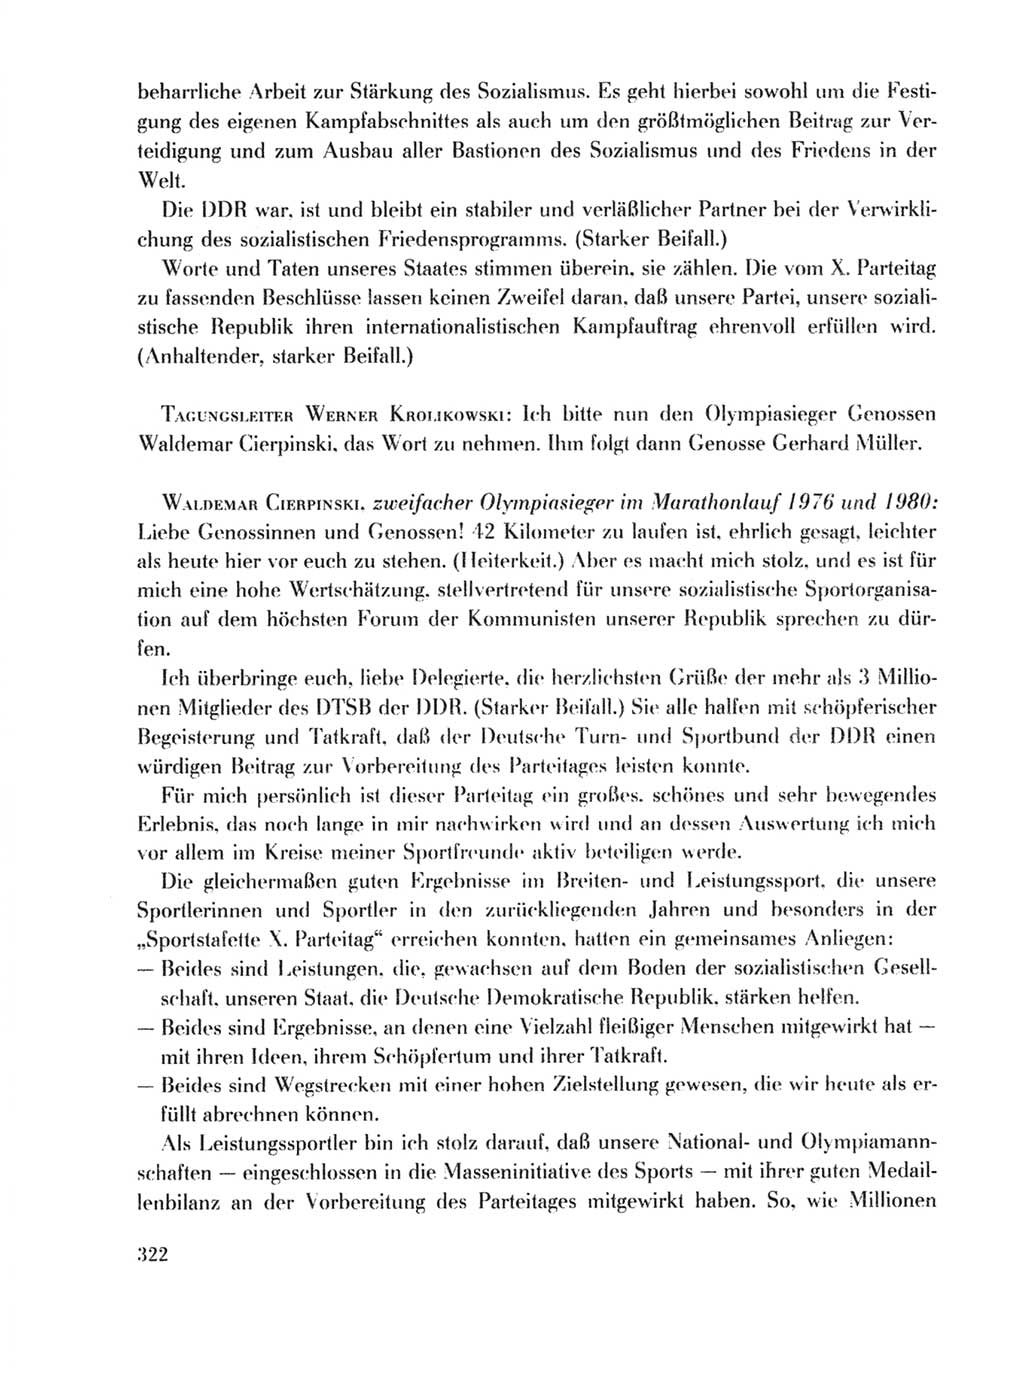 Protokoll der Verhandlungen des Ⅹ. Parteitages der Sozialistischen Einheitspartei Deutschlands (SED) [Deutsche Demokratische Republik (DDR)] 1981, Band 1, Seite 322 (Prot. Verh. Ⅹ. PT SED DDR 1981, Bd. 1, S. 322)